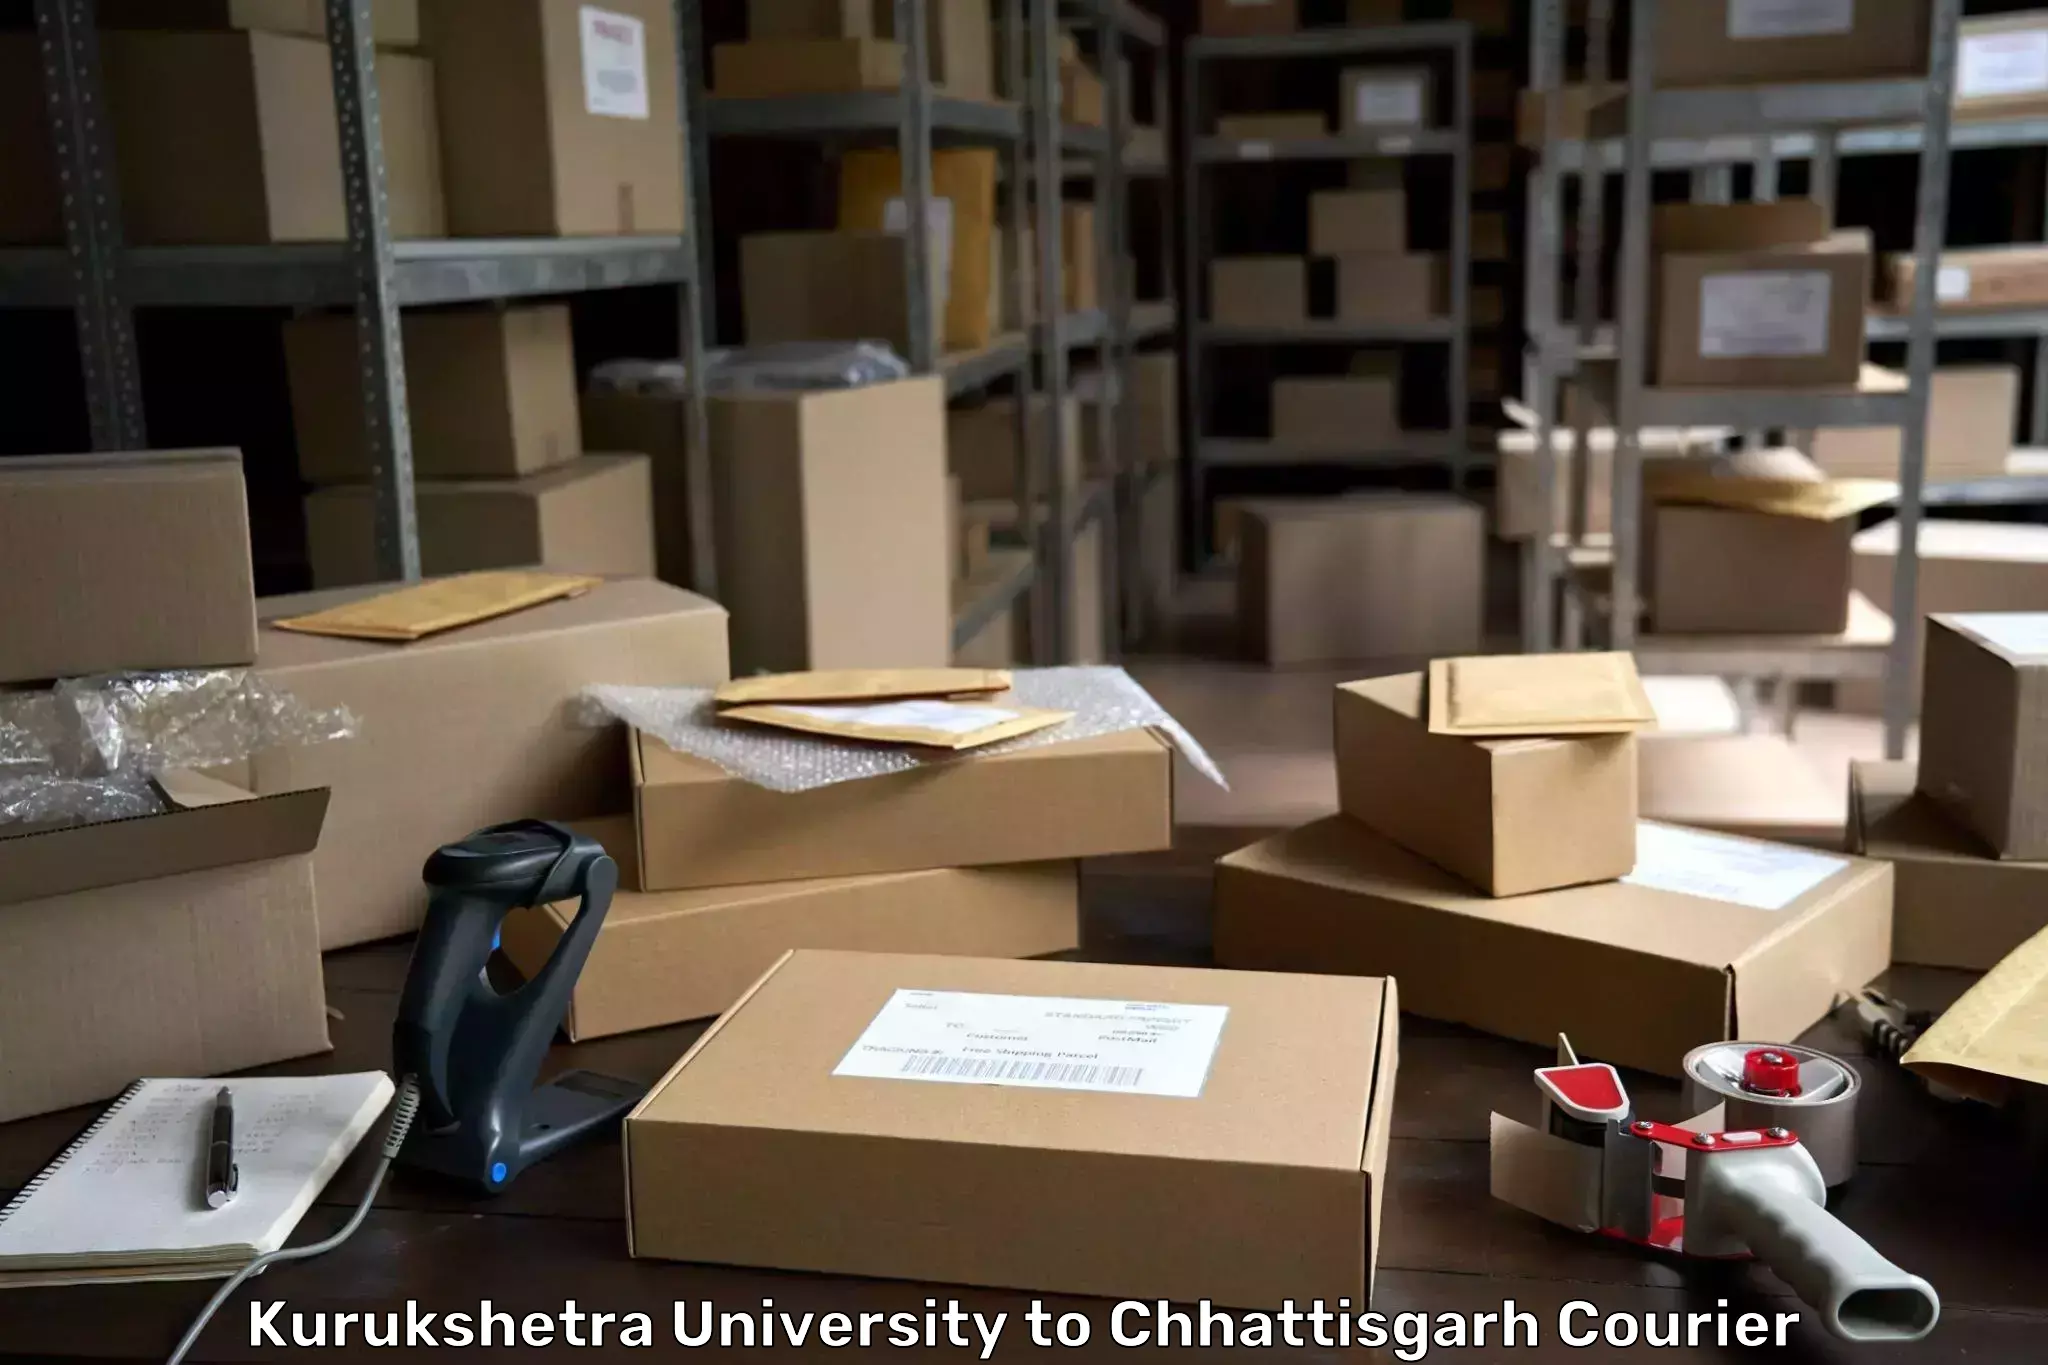 State-of-the-art courier technology Kurukshetra University to Mahasamund